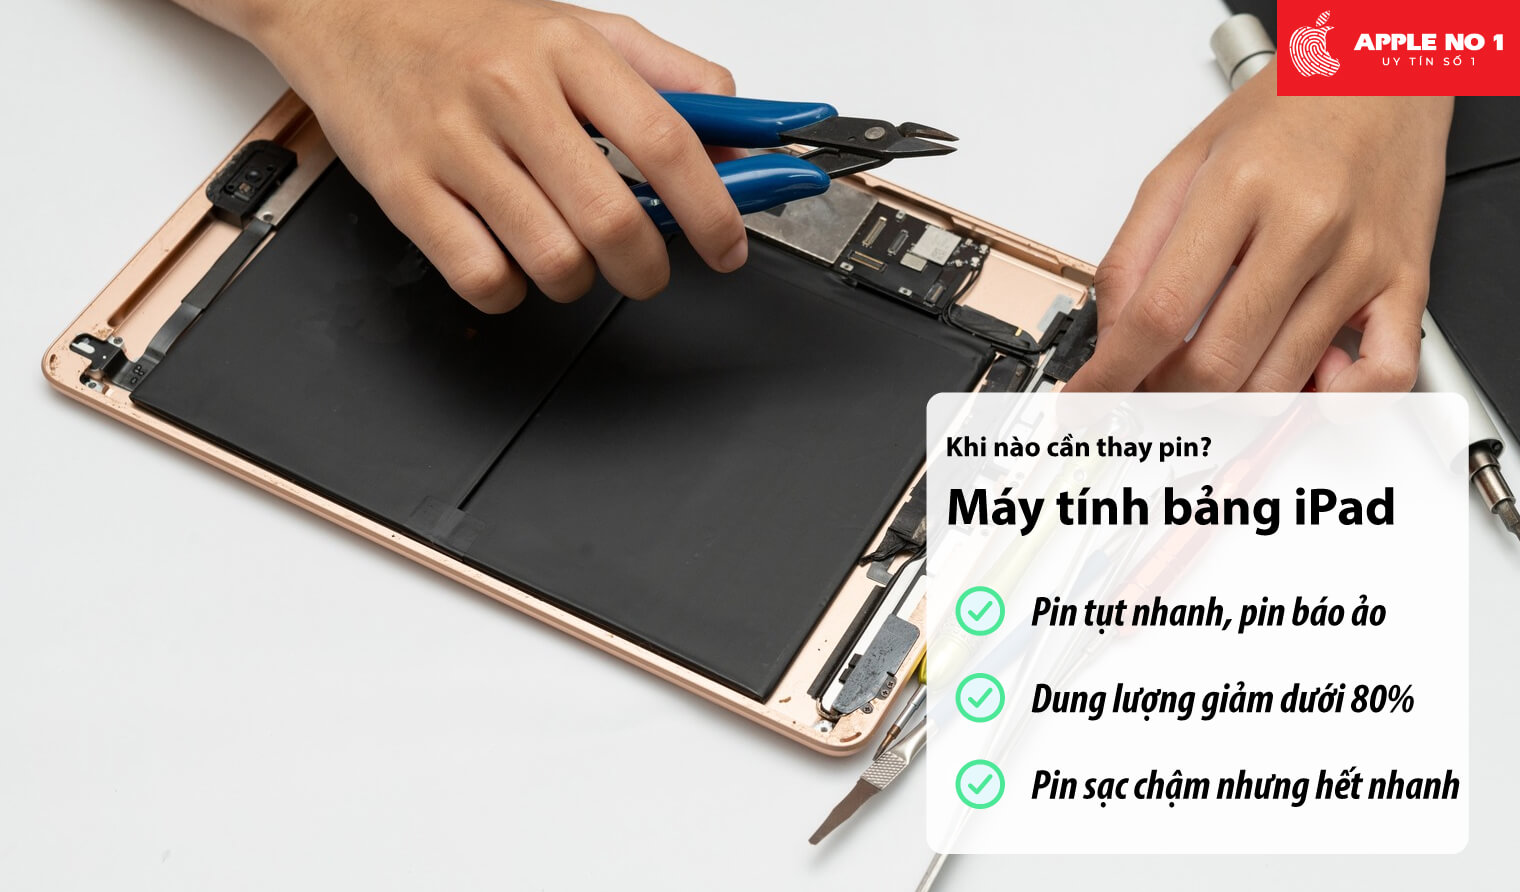 Khi nào cần thay pin iPad?